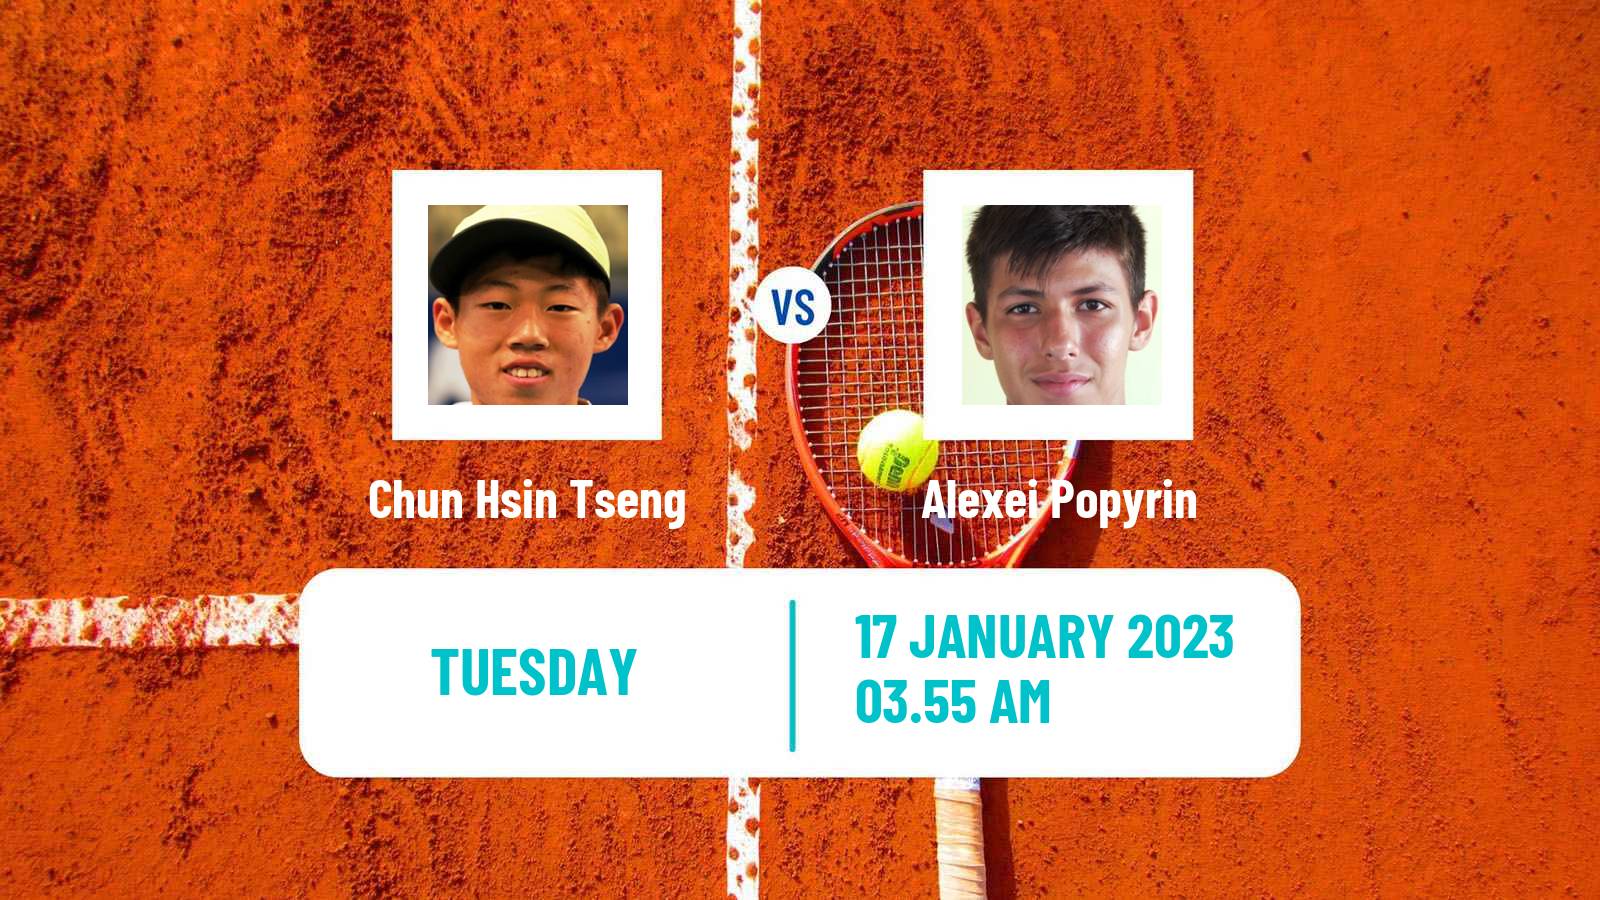 Tennis ATP Australian Open Chun Hsin Tseng - Alexei Popyrin